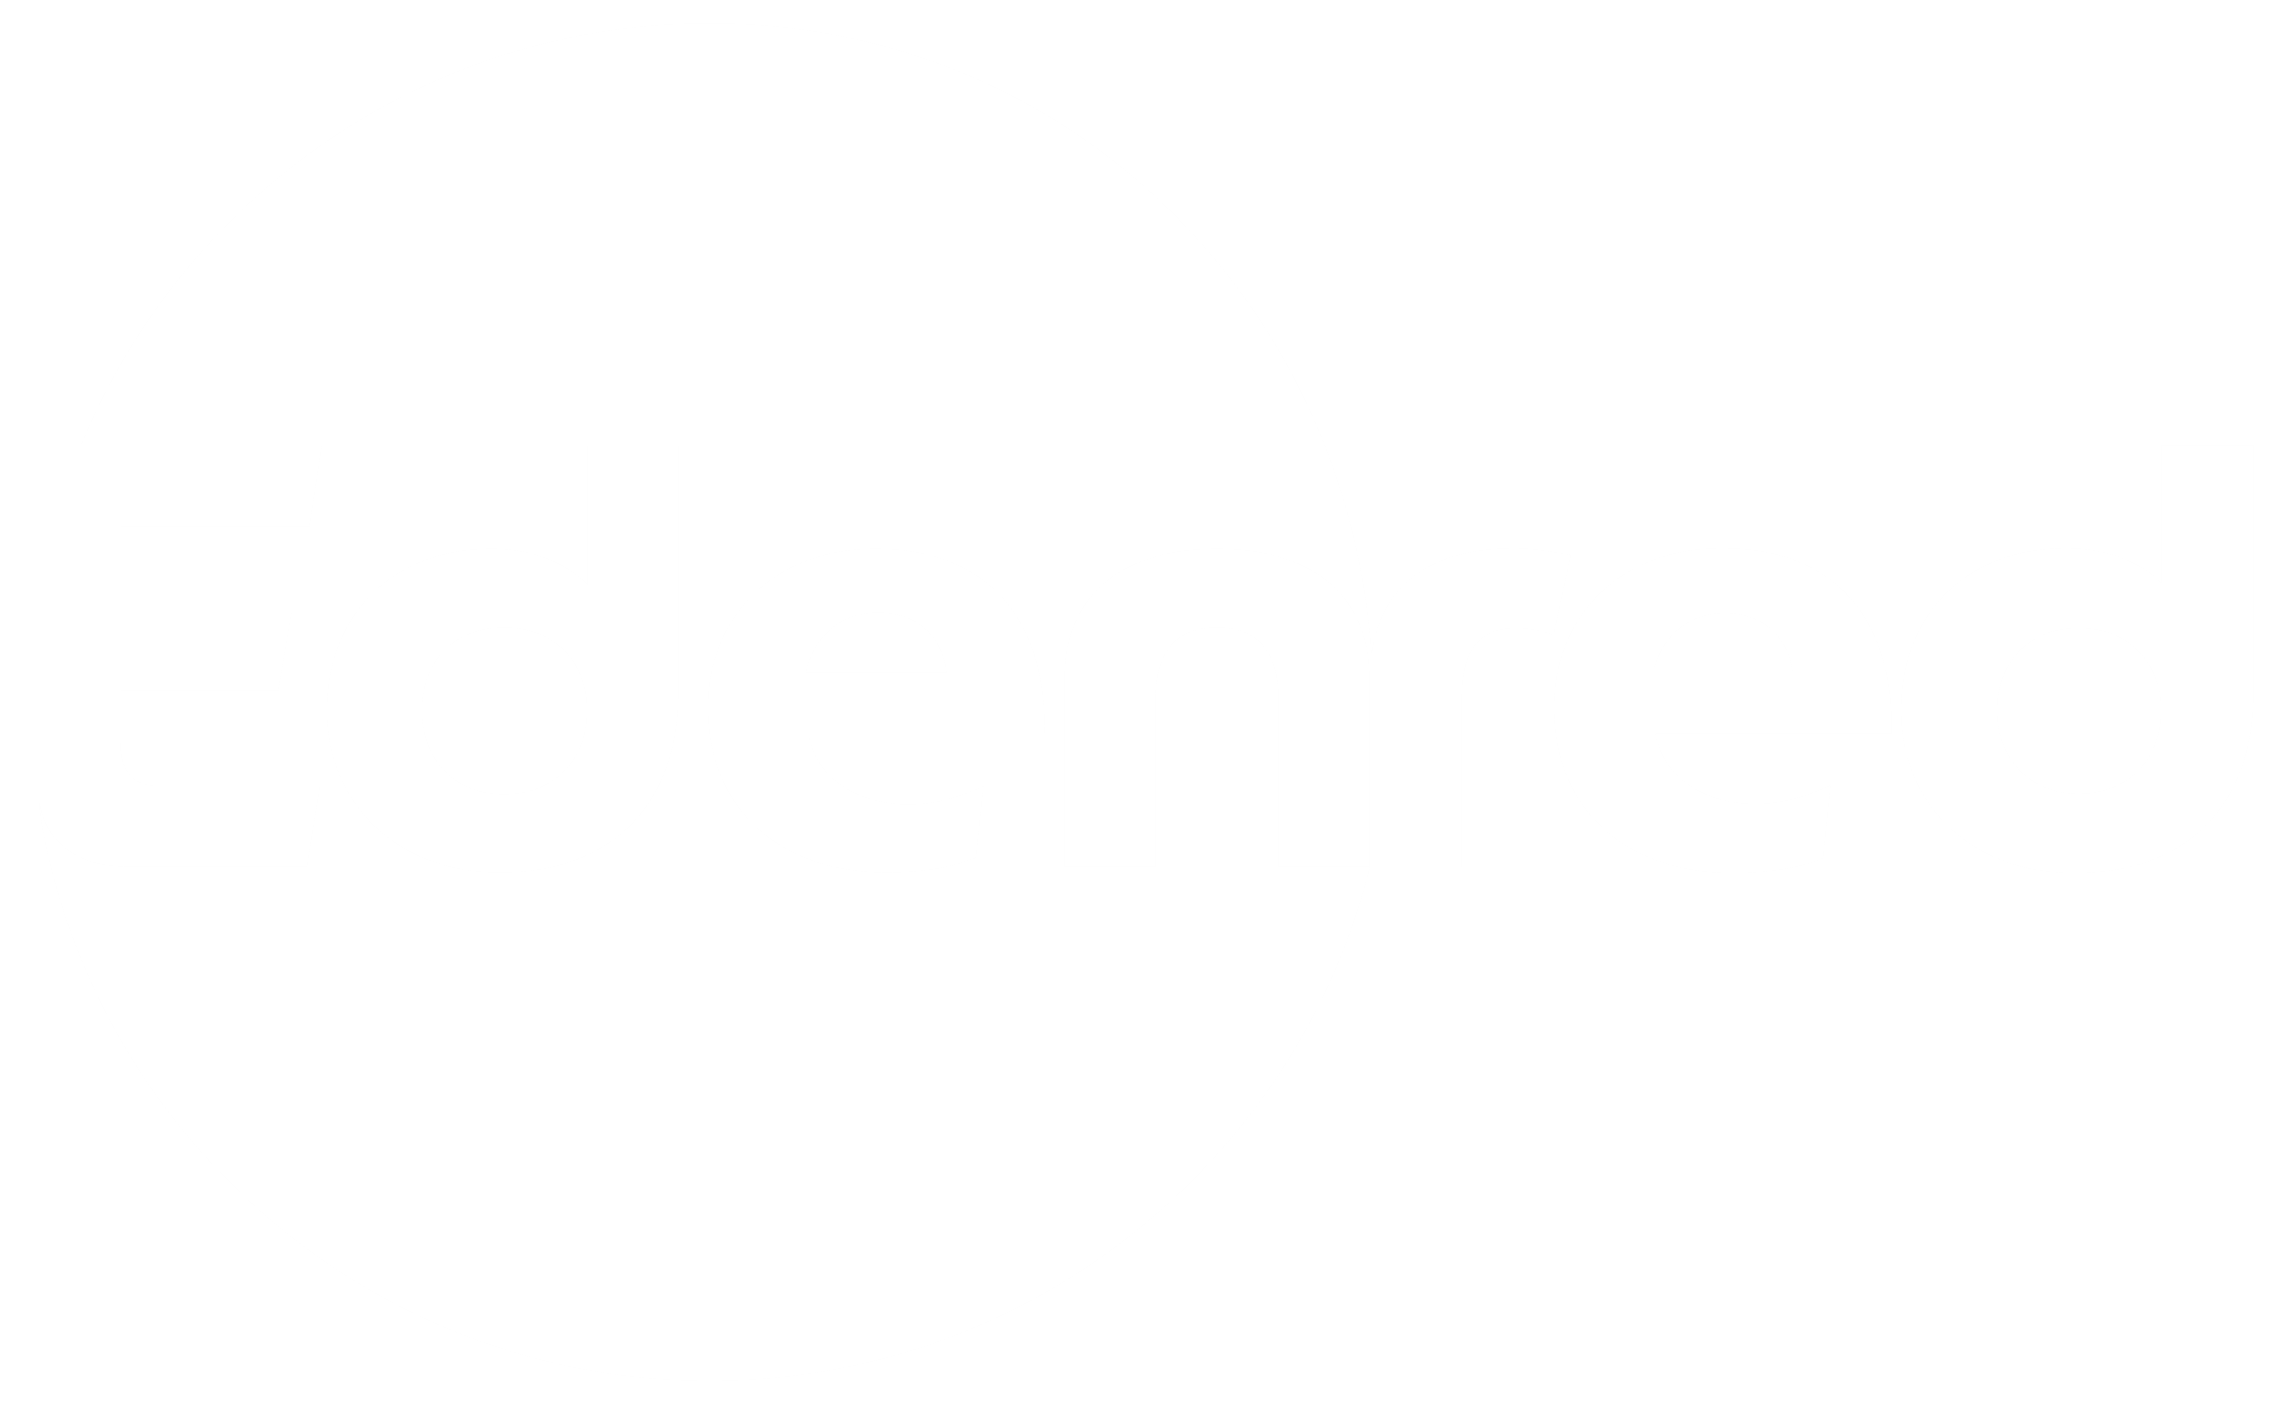 Logotipo de la empresa Edenred